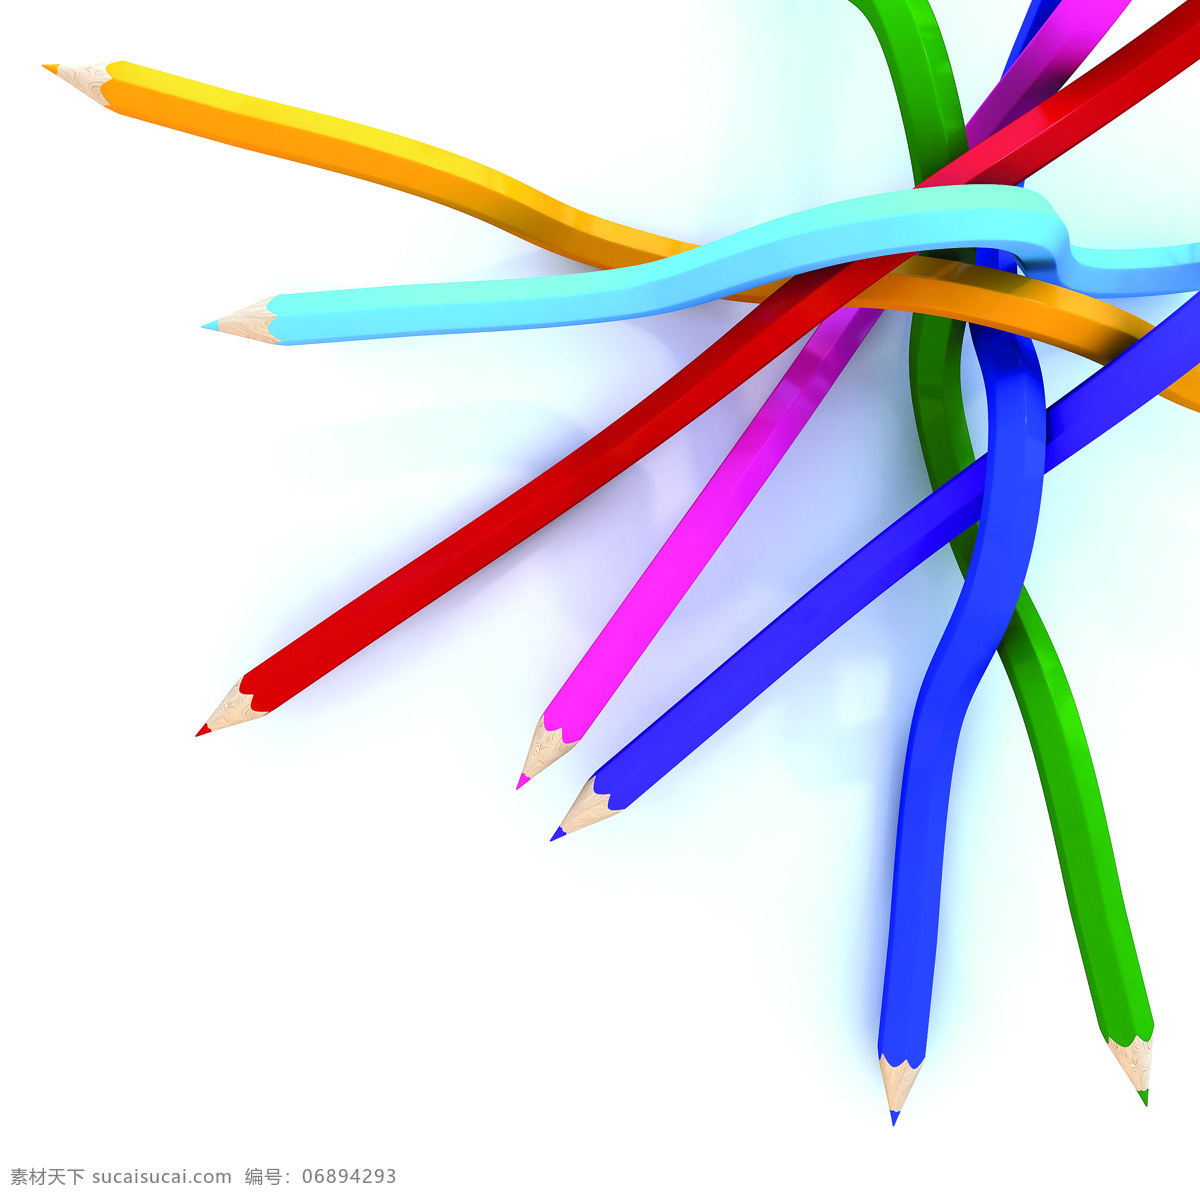 3d 3d设计 办公 彩色铅笔 画笔 铅笔 生活百科 七彩铅笔 五彩 文具 图画笔 文化 用品 学习用品 学习办公 生活素材 psd源文件